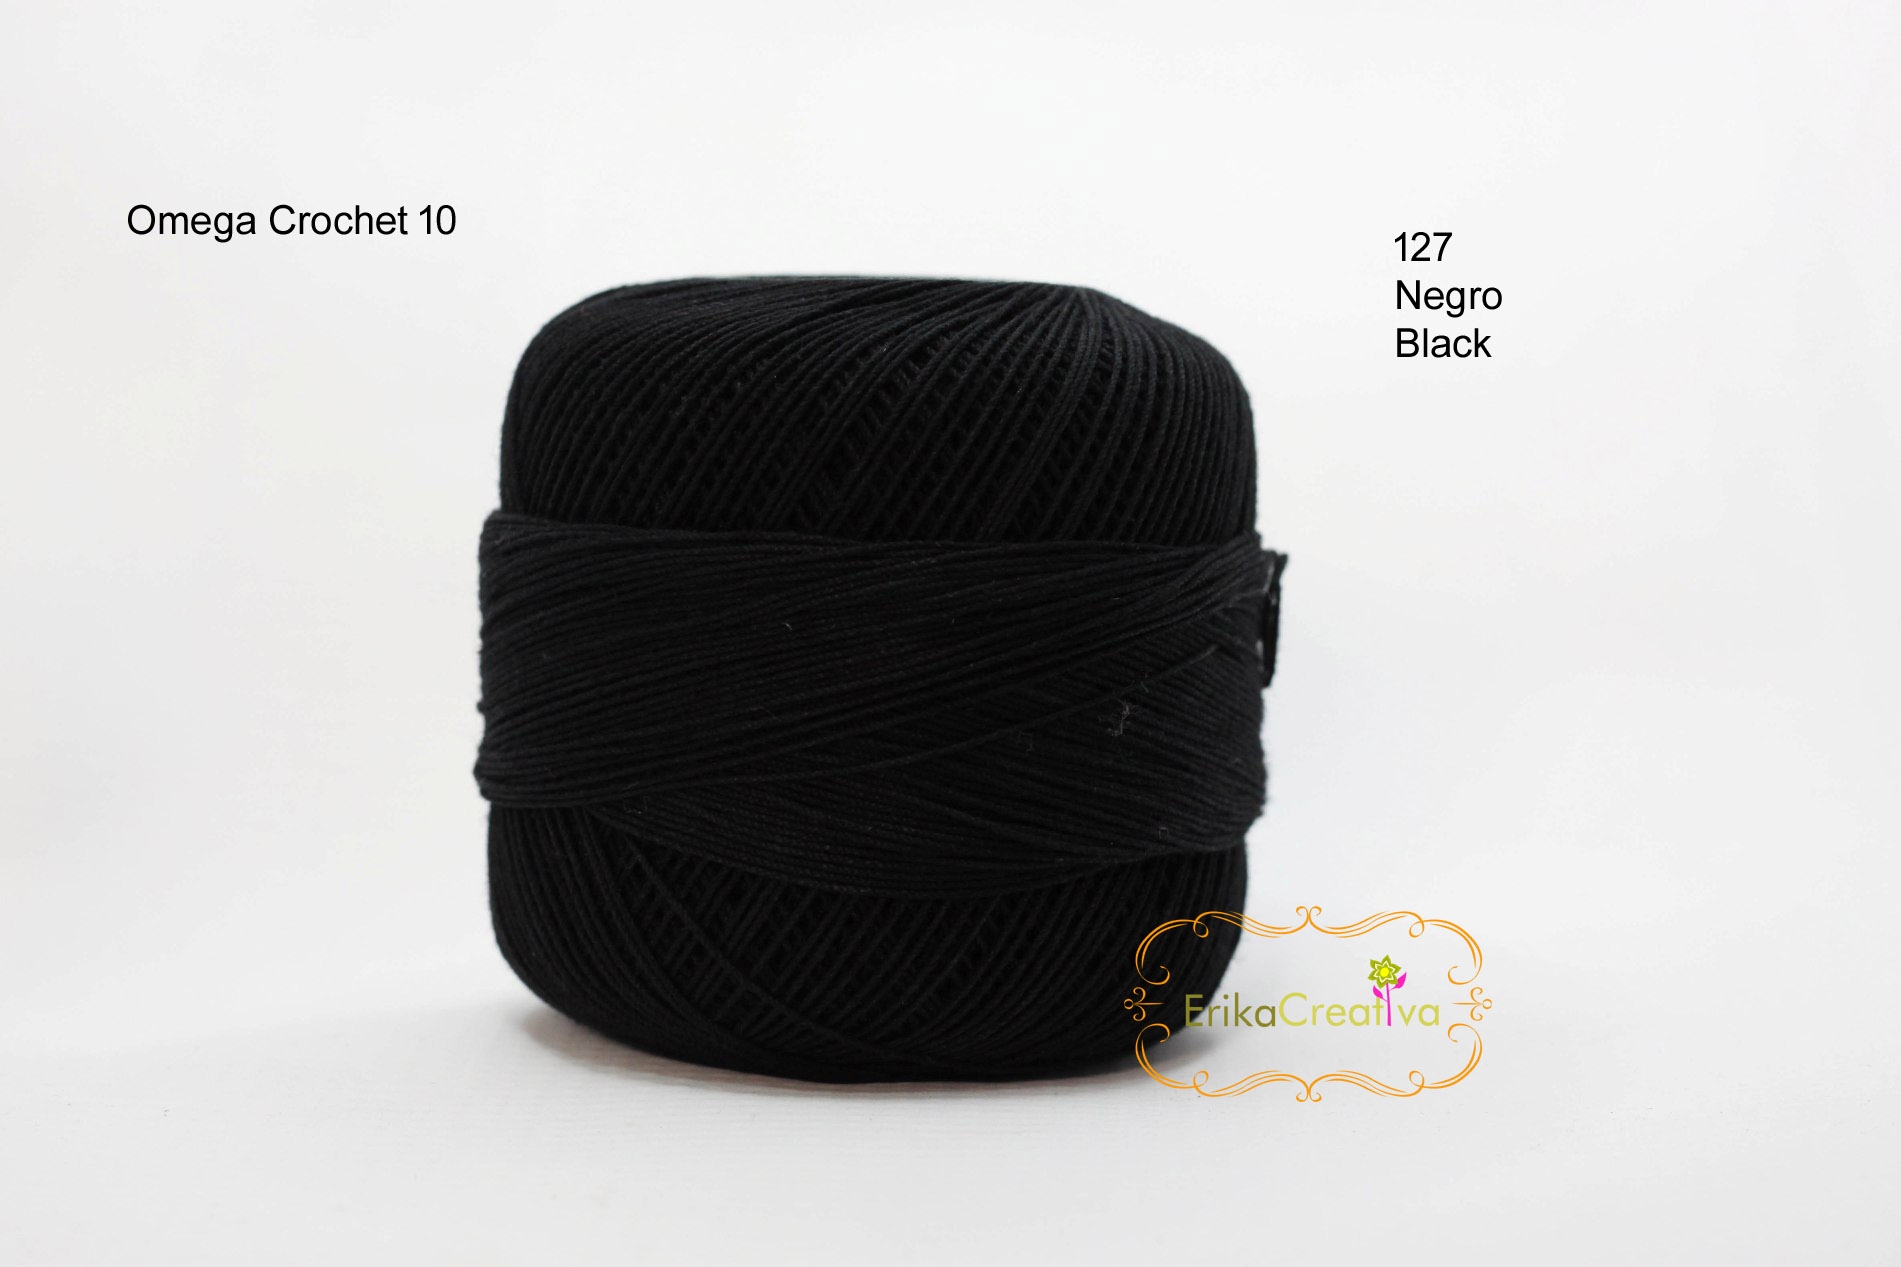 Omega Crochet 10 – ErikaCreativa